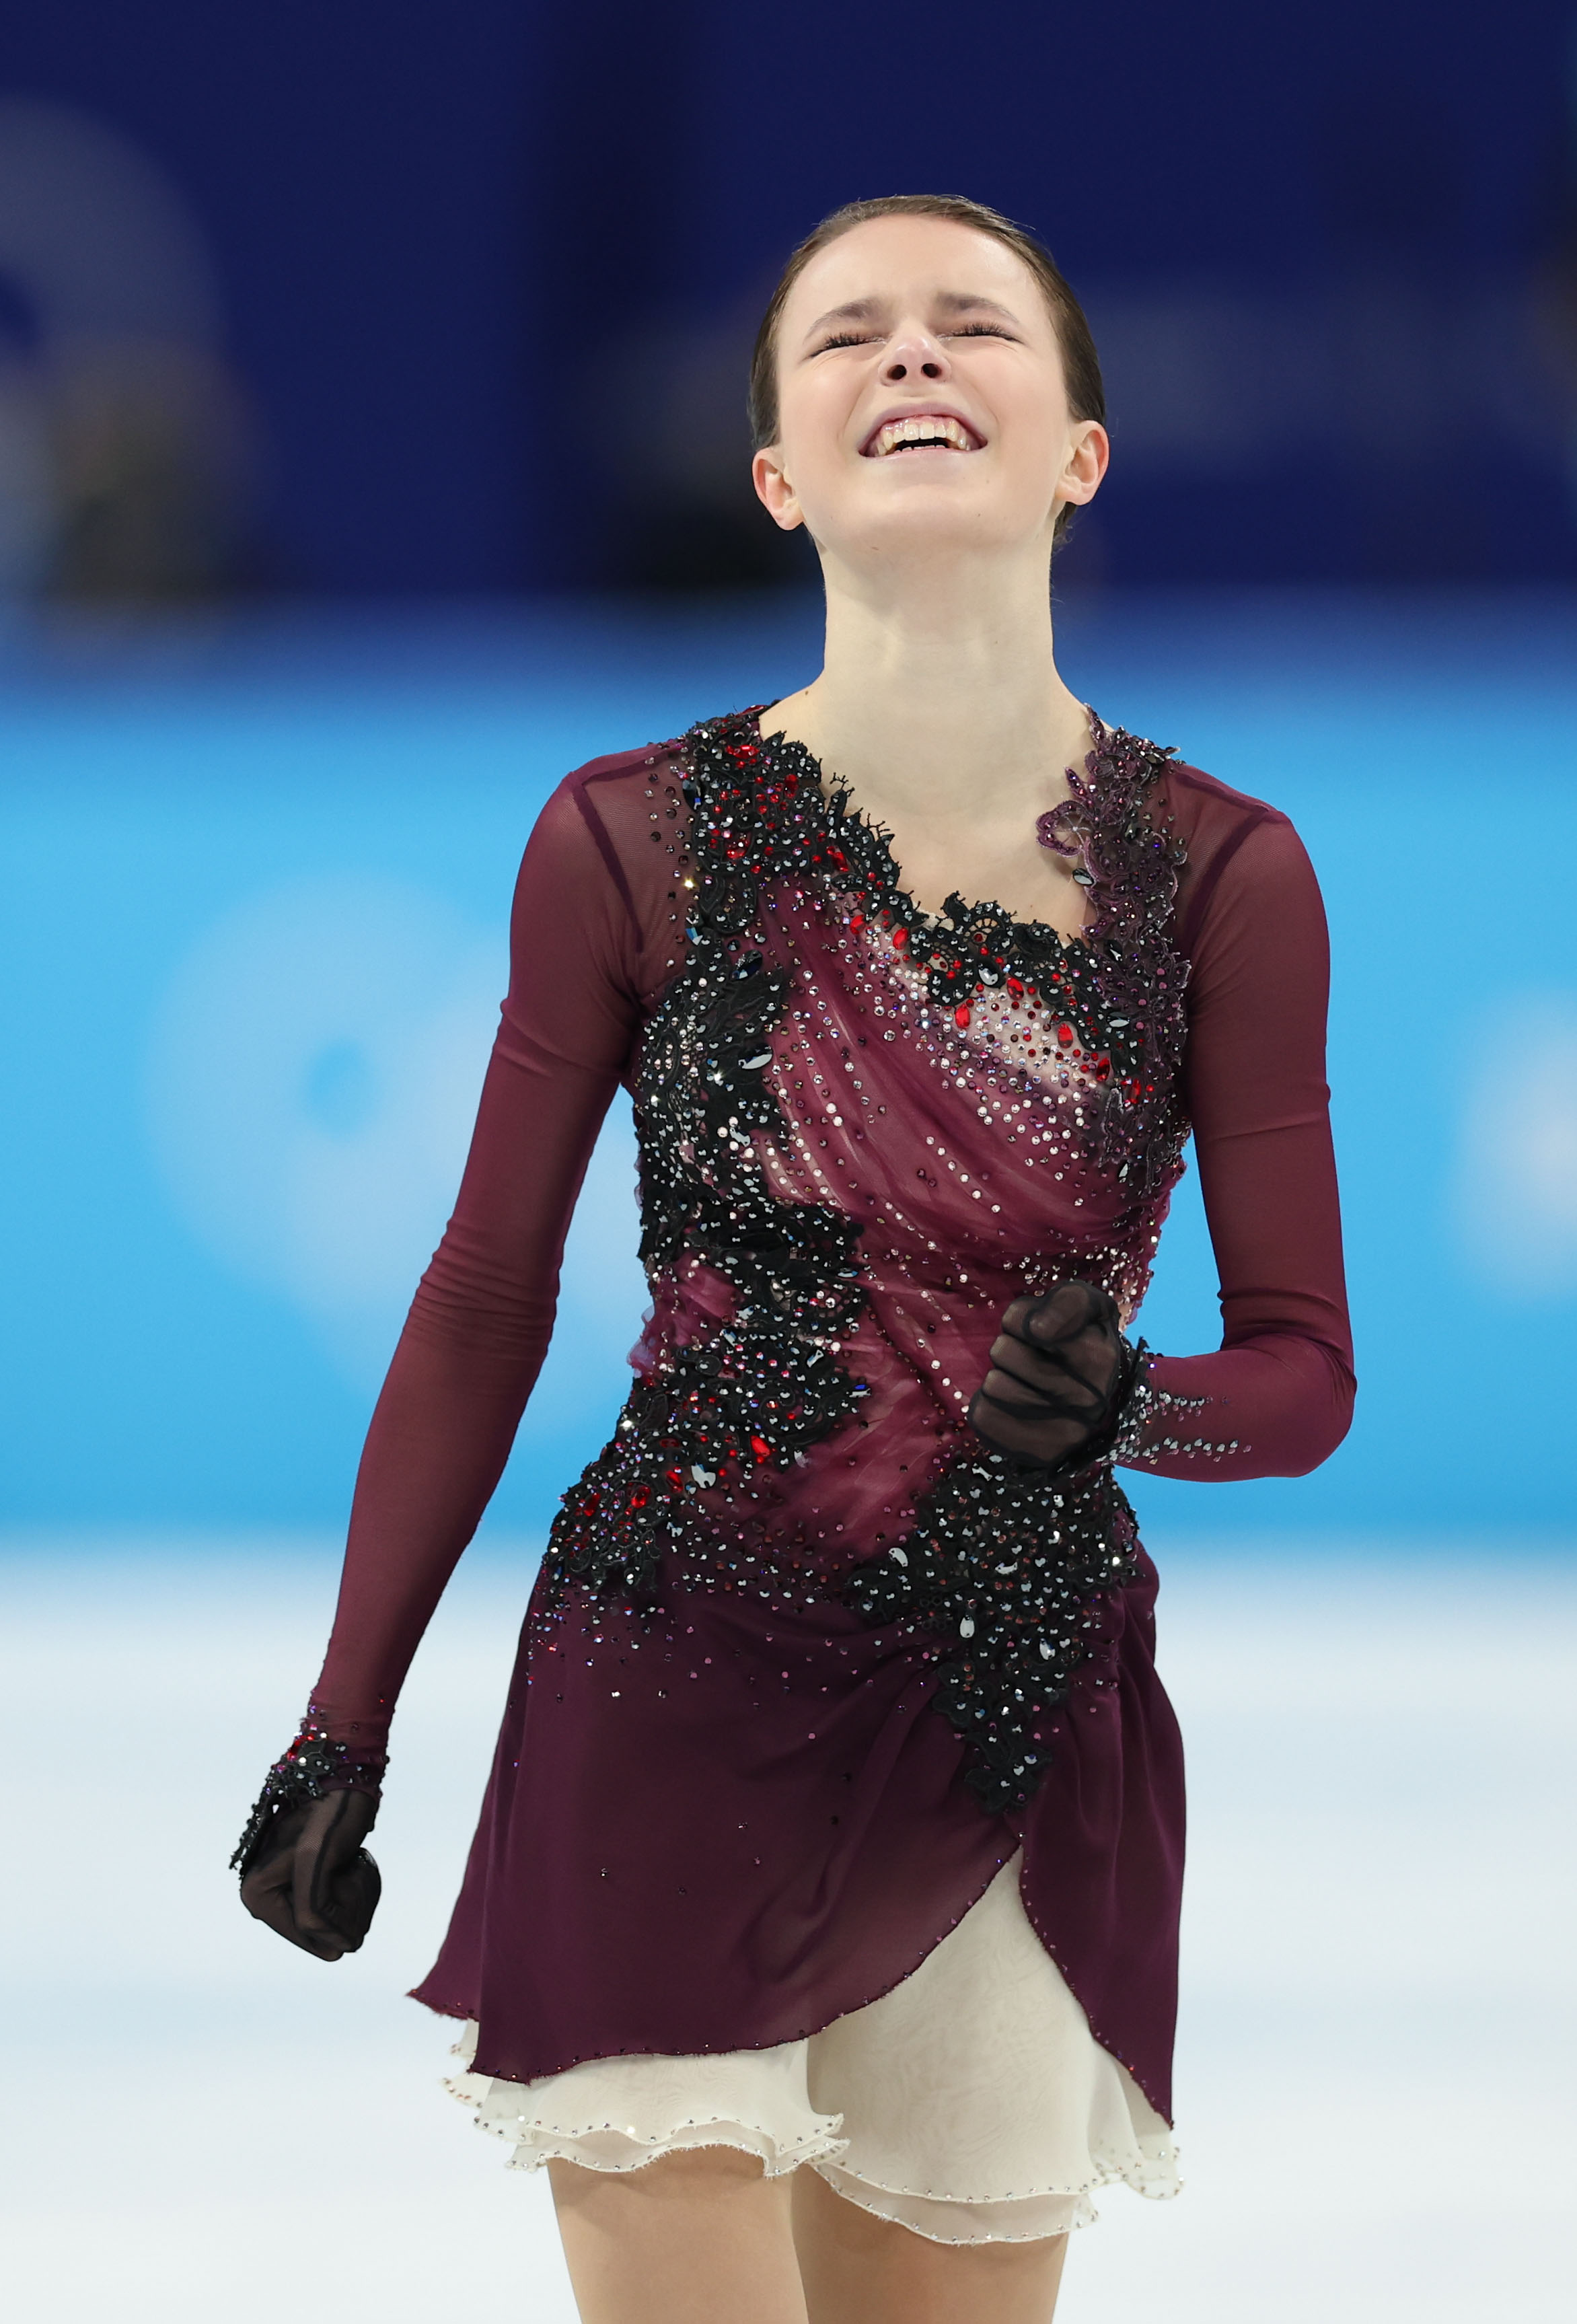 花样滑冰——女子单人滑:俄罗斯奥委会选手安娜·谢尔巴科娃夺得冠军